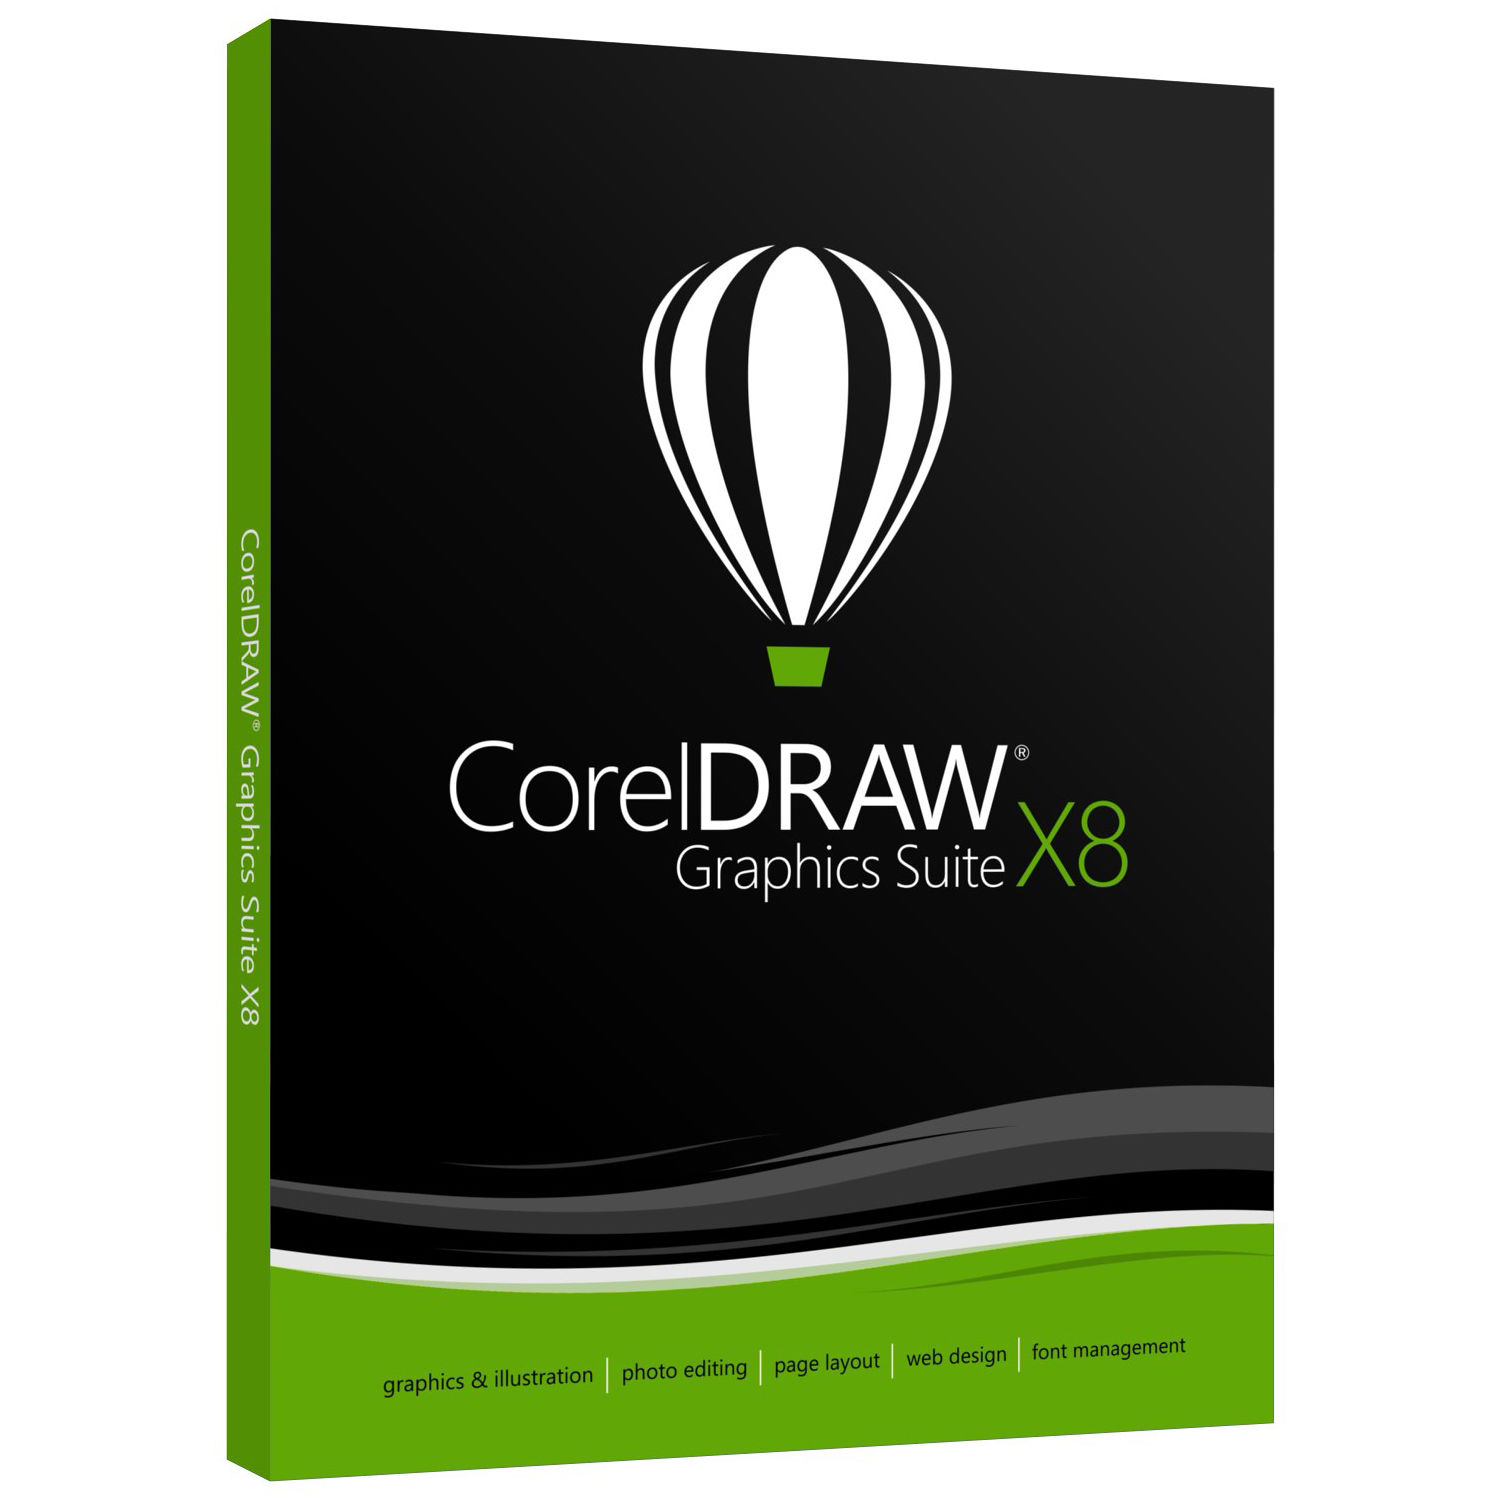 coreldraw graphics suite x6 32 bit - and torrent 2017